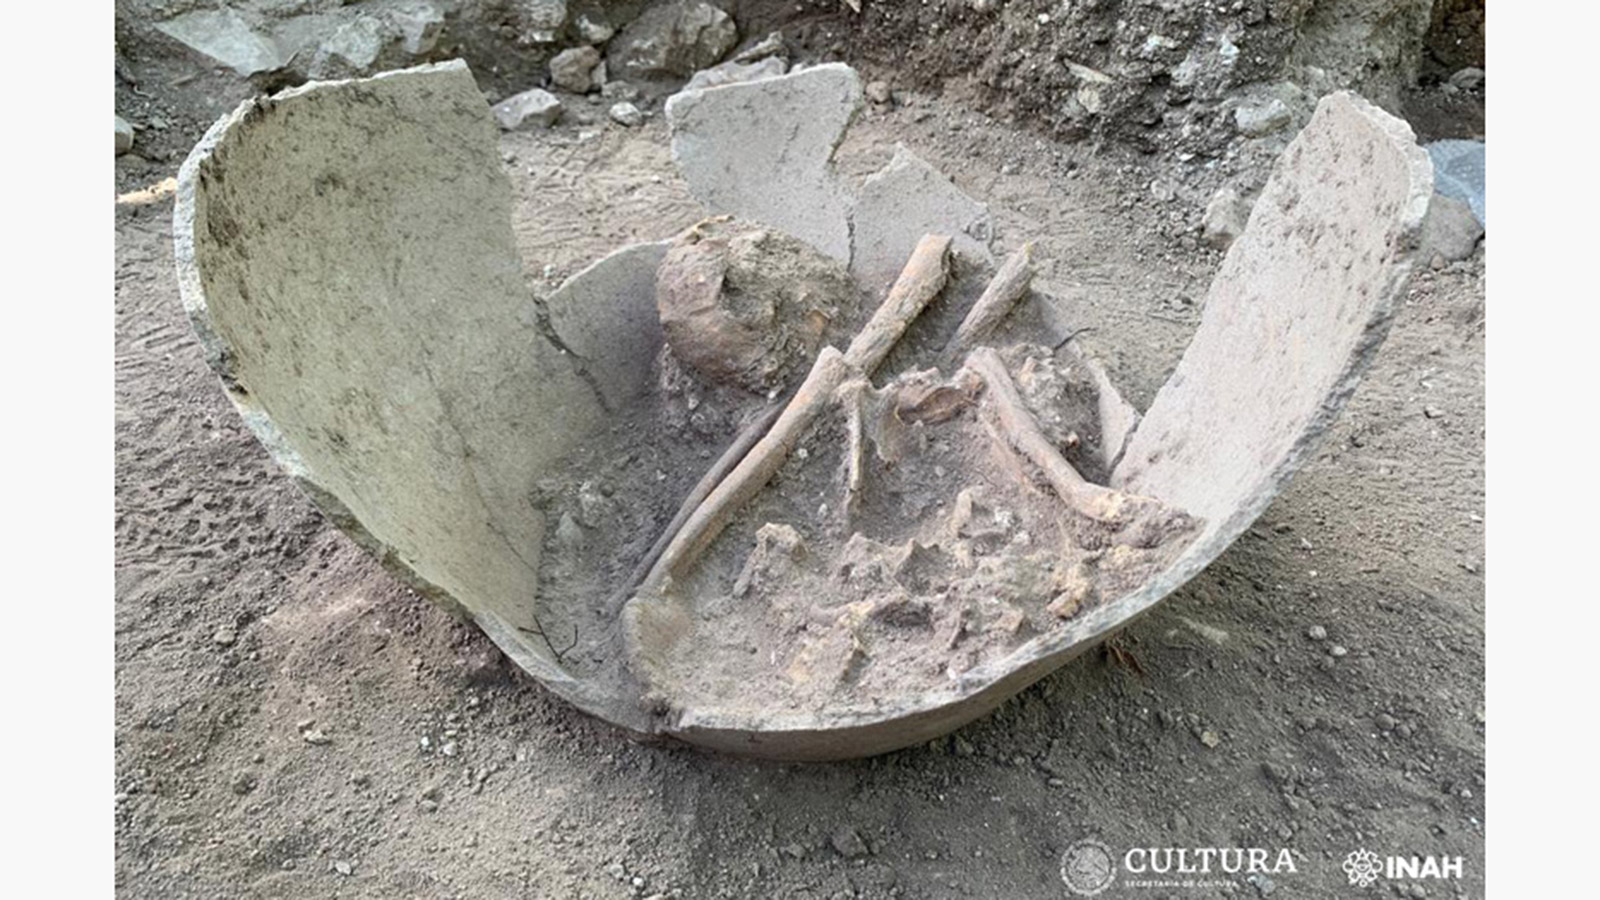 <p>Нефритовое кольцо и останки, обнаруженные в Эль-Тигре</p>